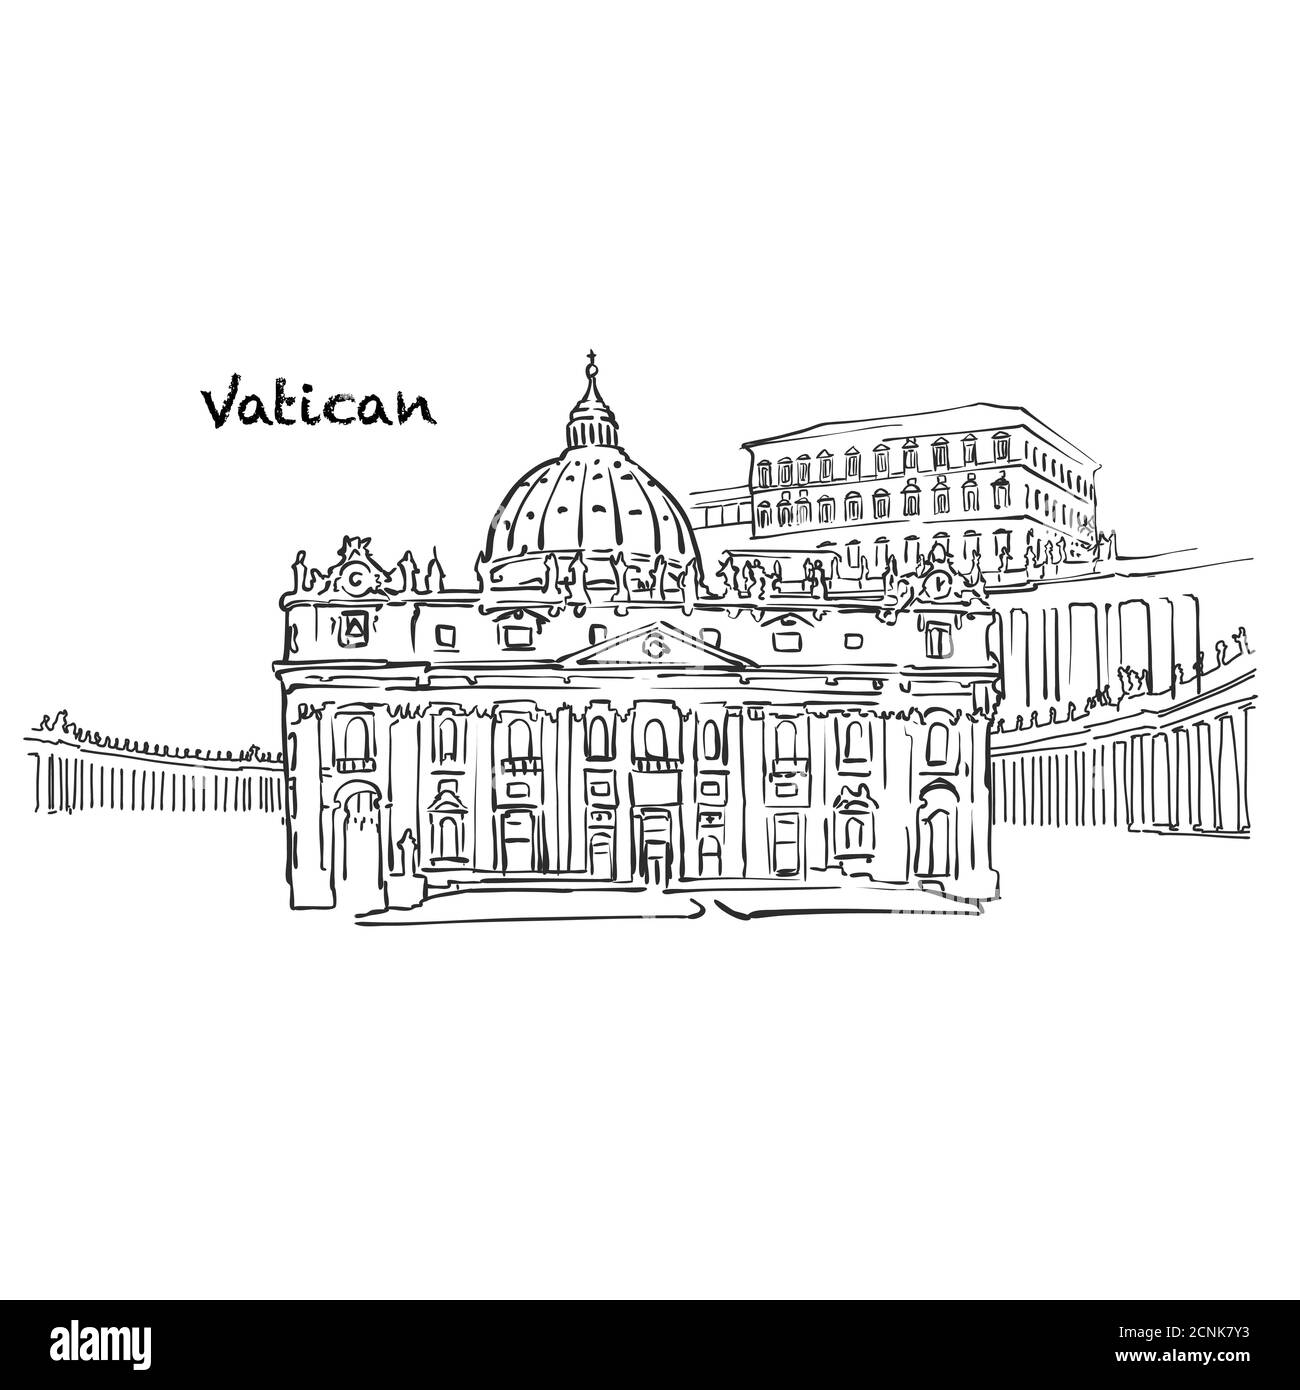 Edifici famosi del Vaticano, composizione della Santa sede. Illustrazione vettoriale in bianco e nero disegnata a mano. Oggetti raggruppati e mobili. Illustrazione Vettoriale